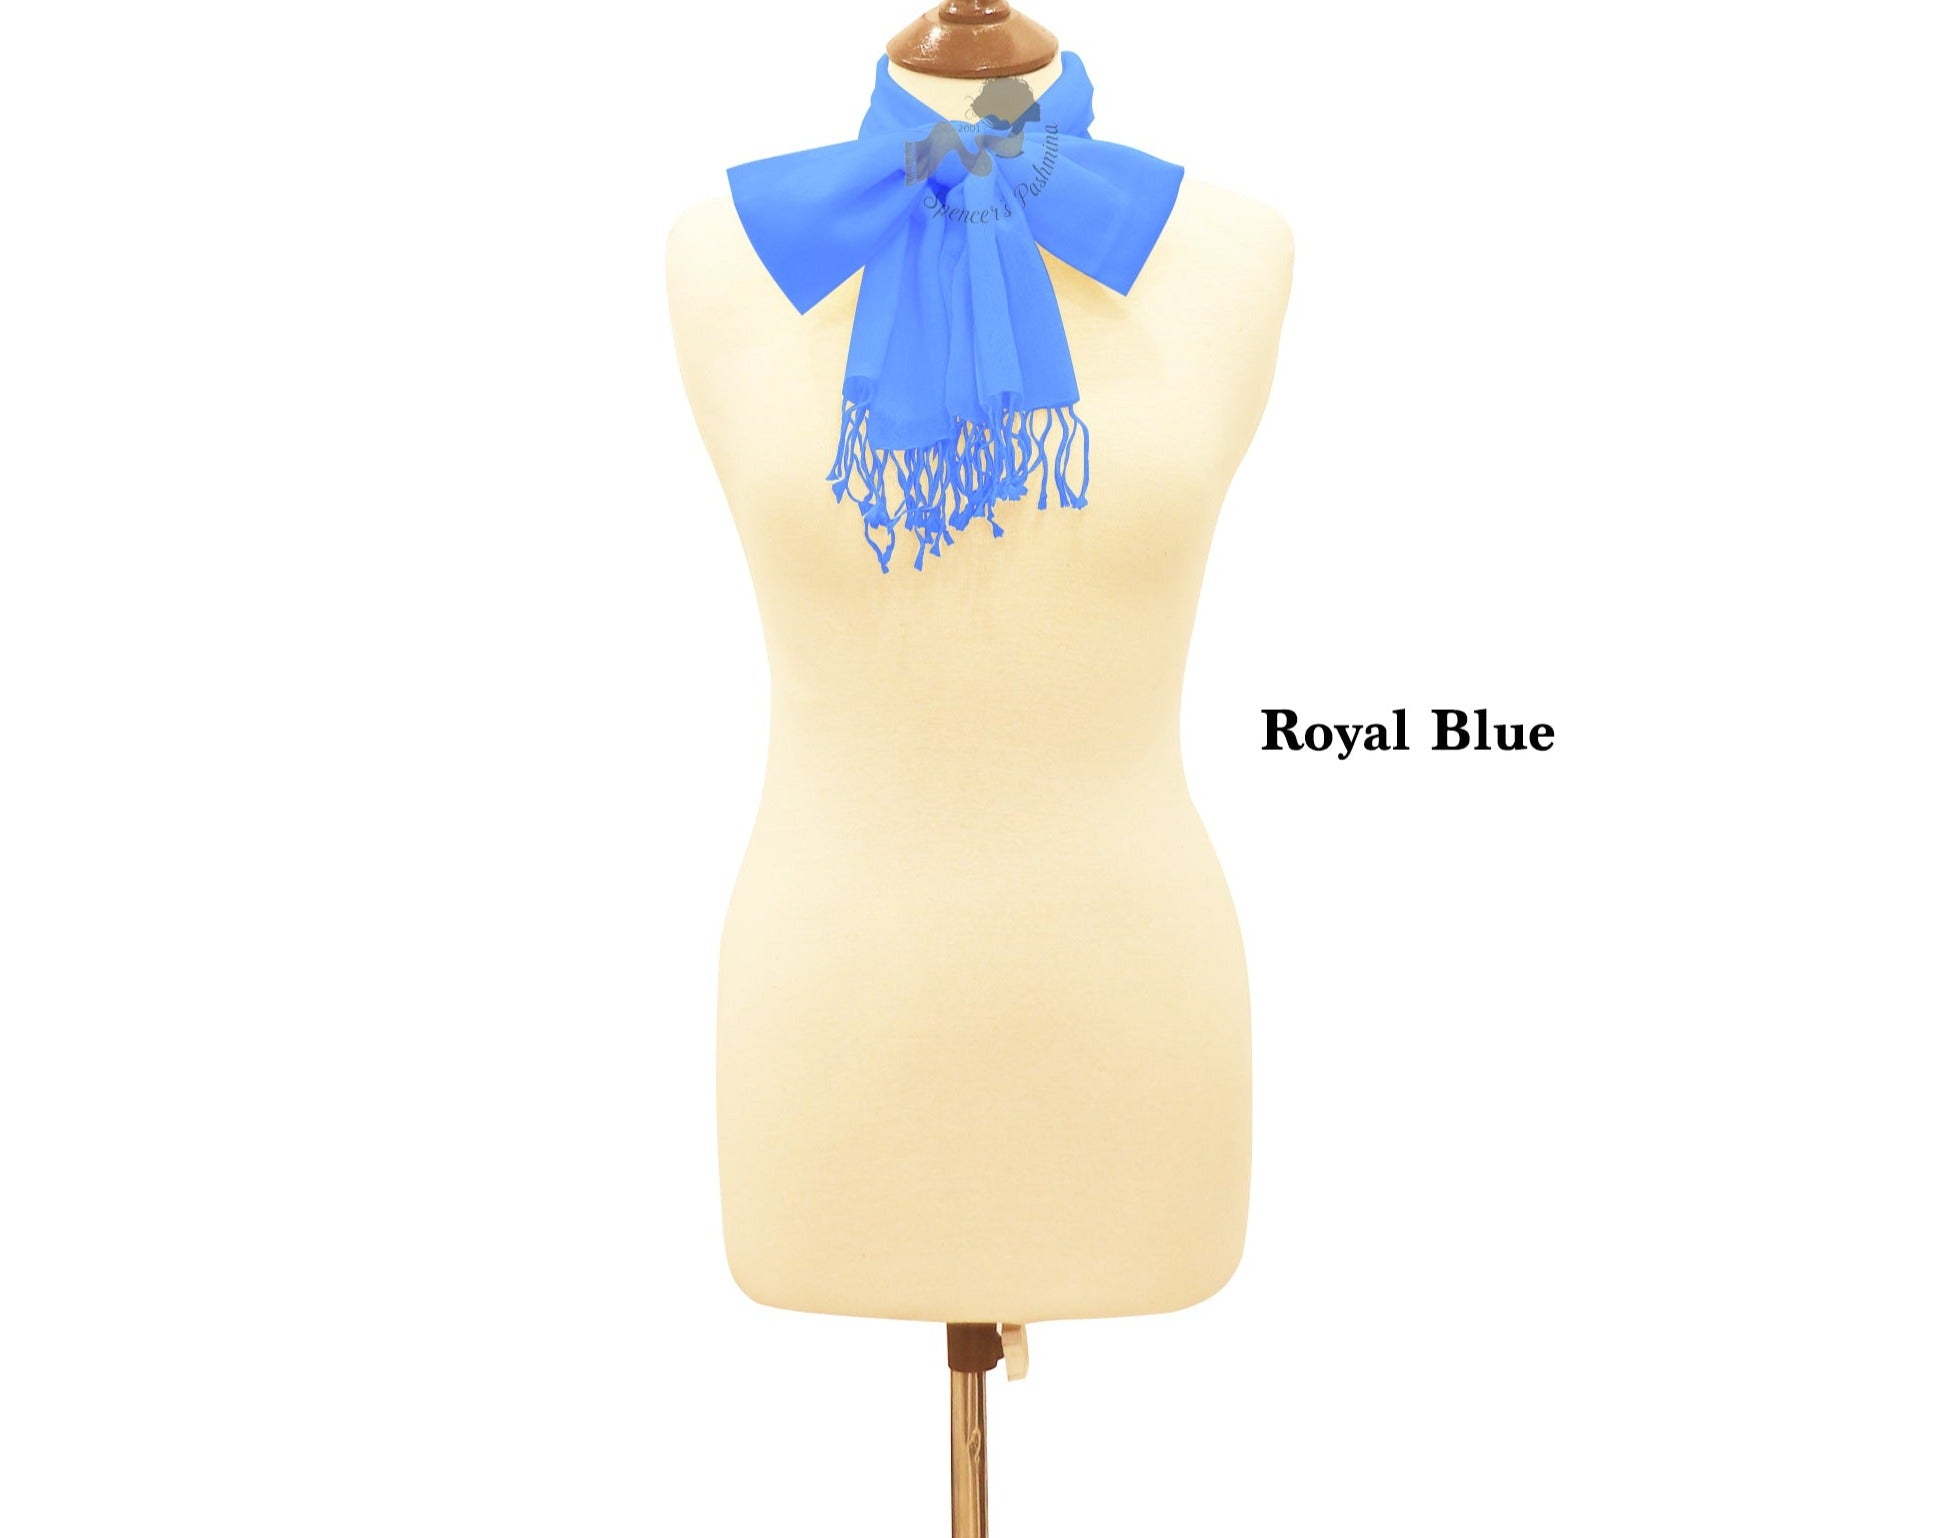 Royal blue scarf ring pashmina.